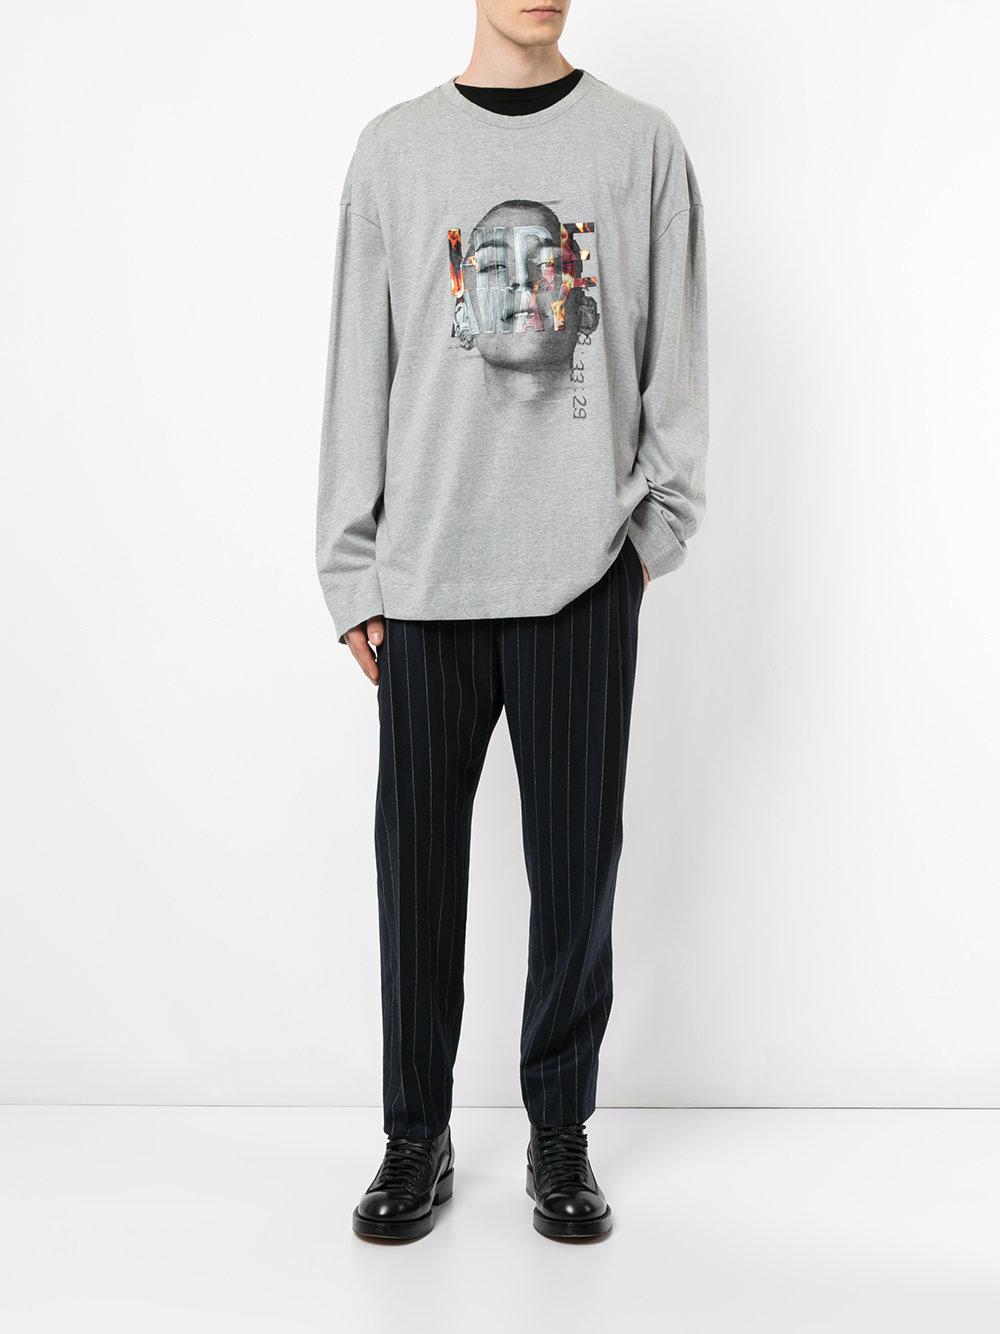 Juun.J Cotton Hideway Sweatshirt in Grey (Gray) for Men - Lyst